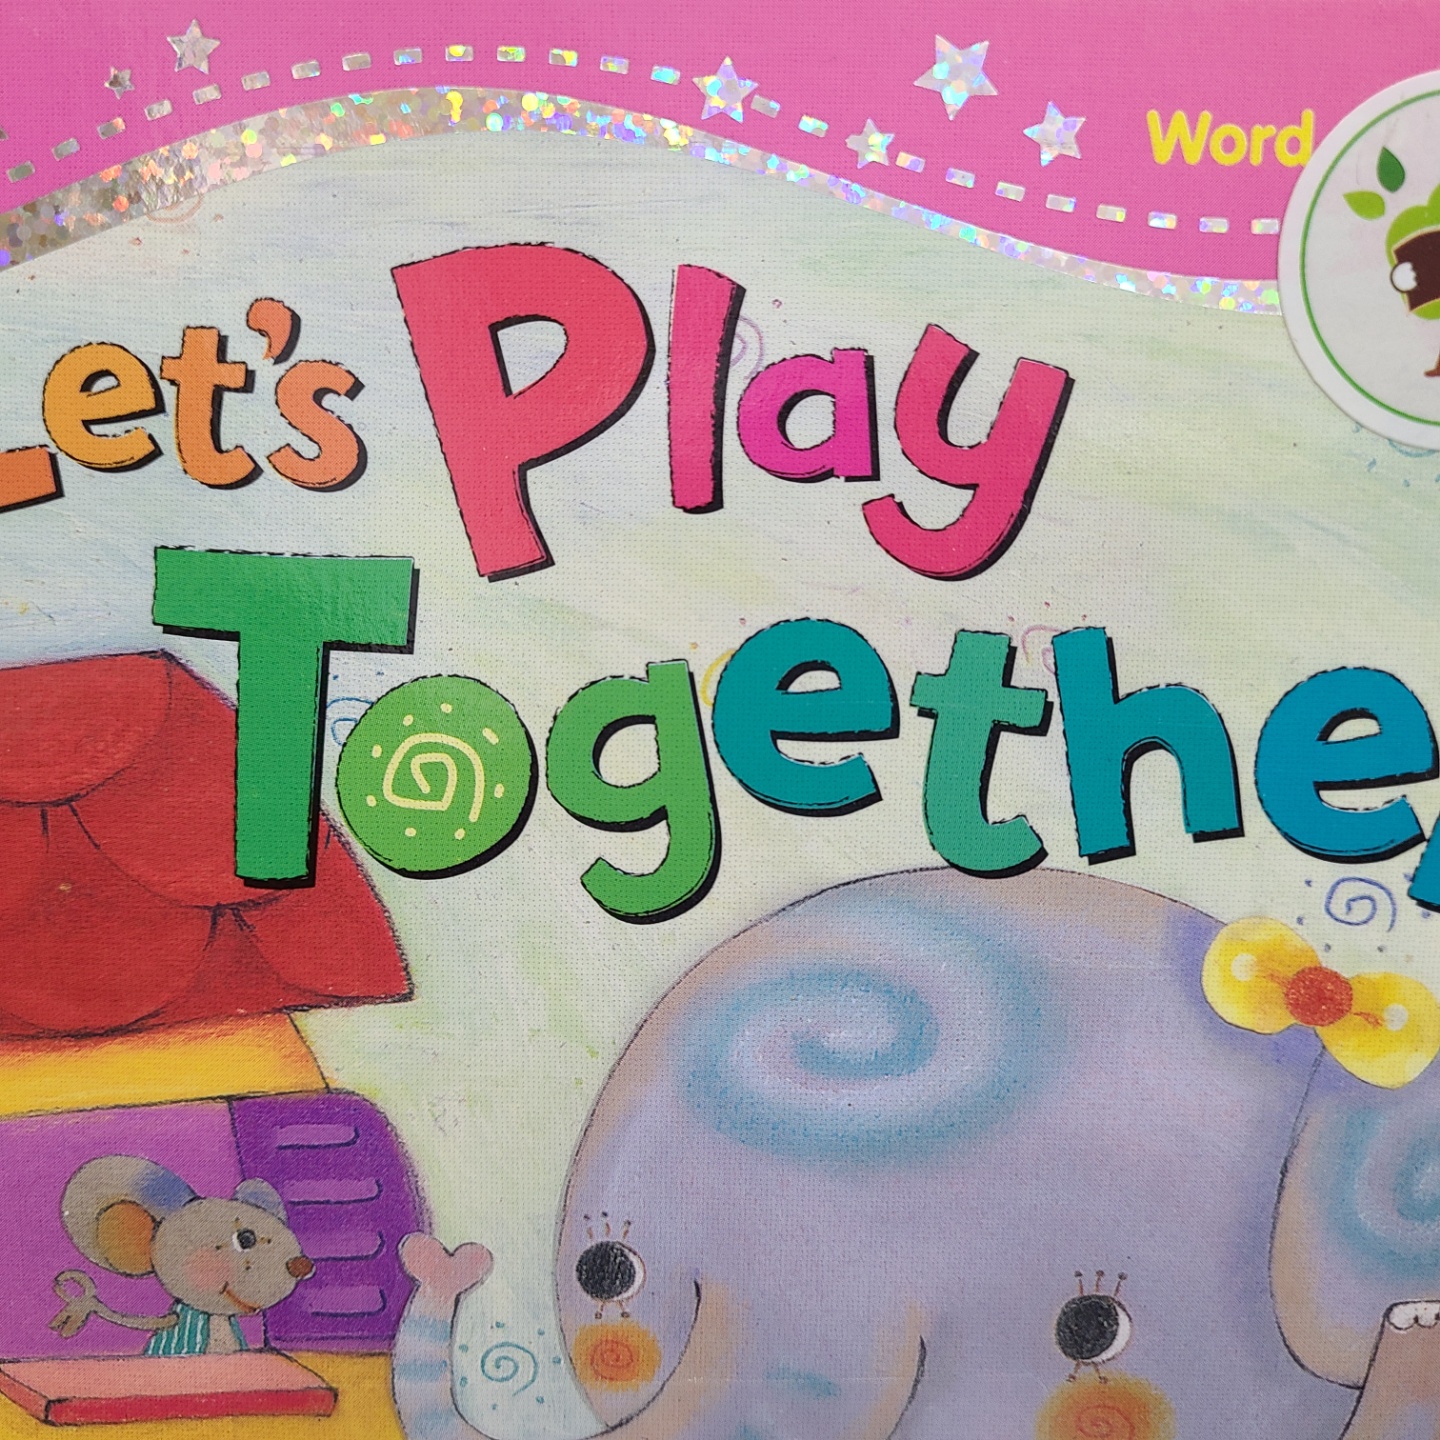 씽씽 영어 Word 22 Let’s Play Together